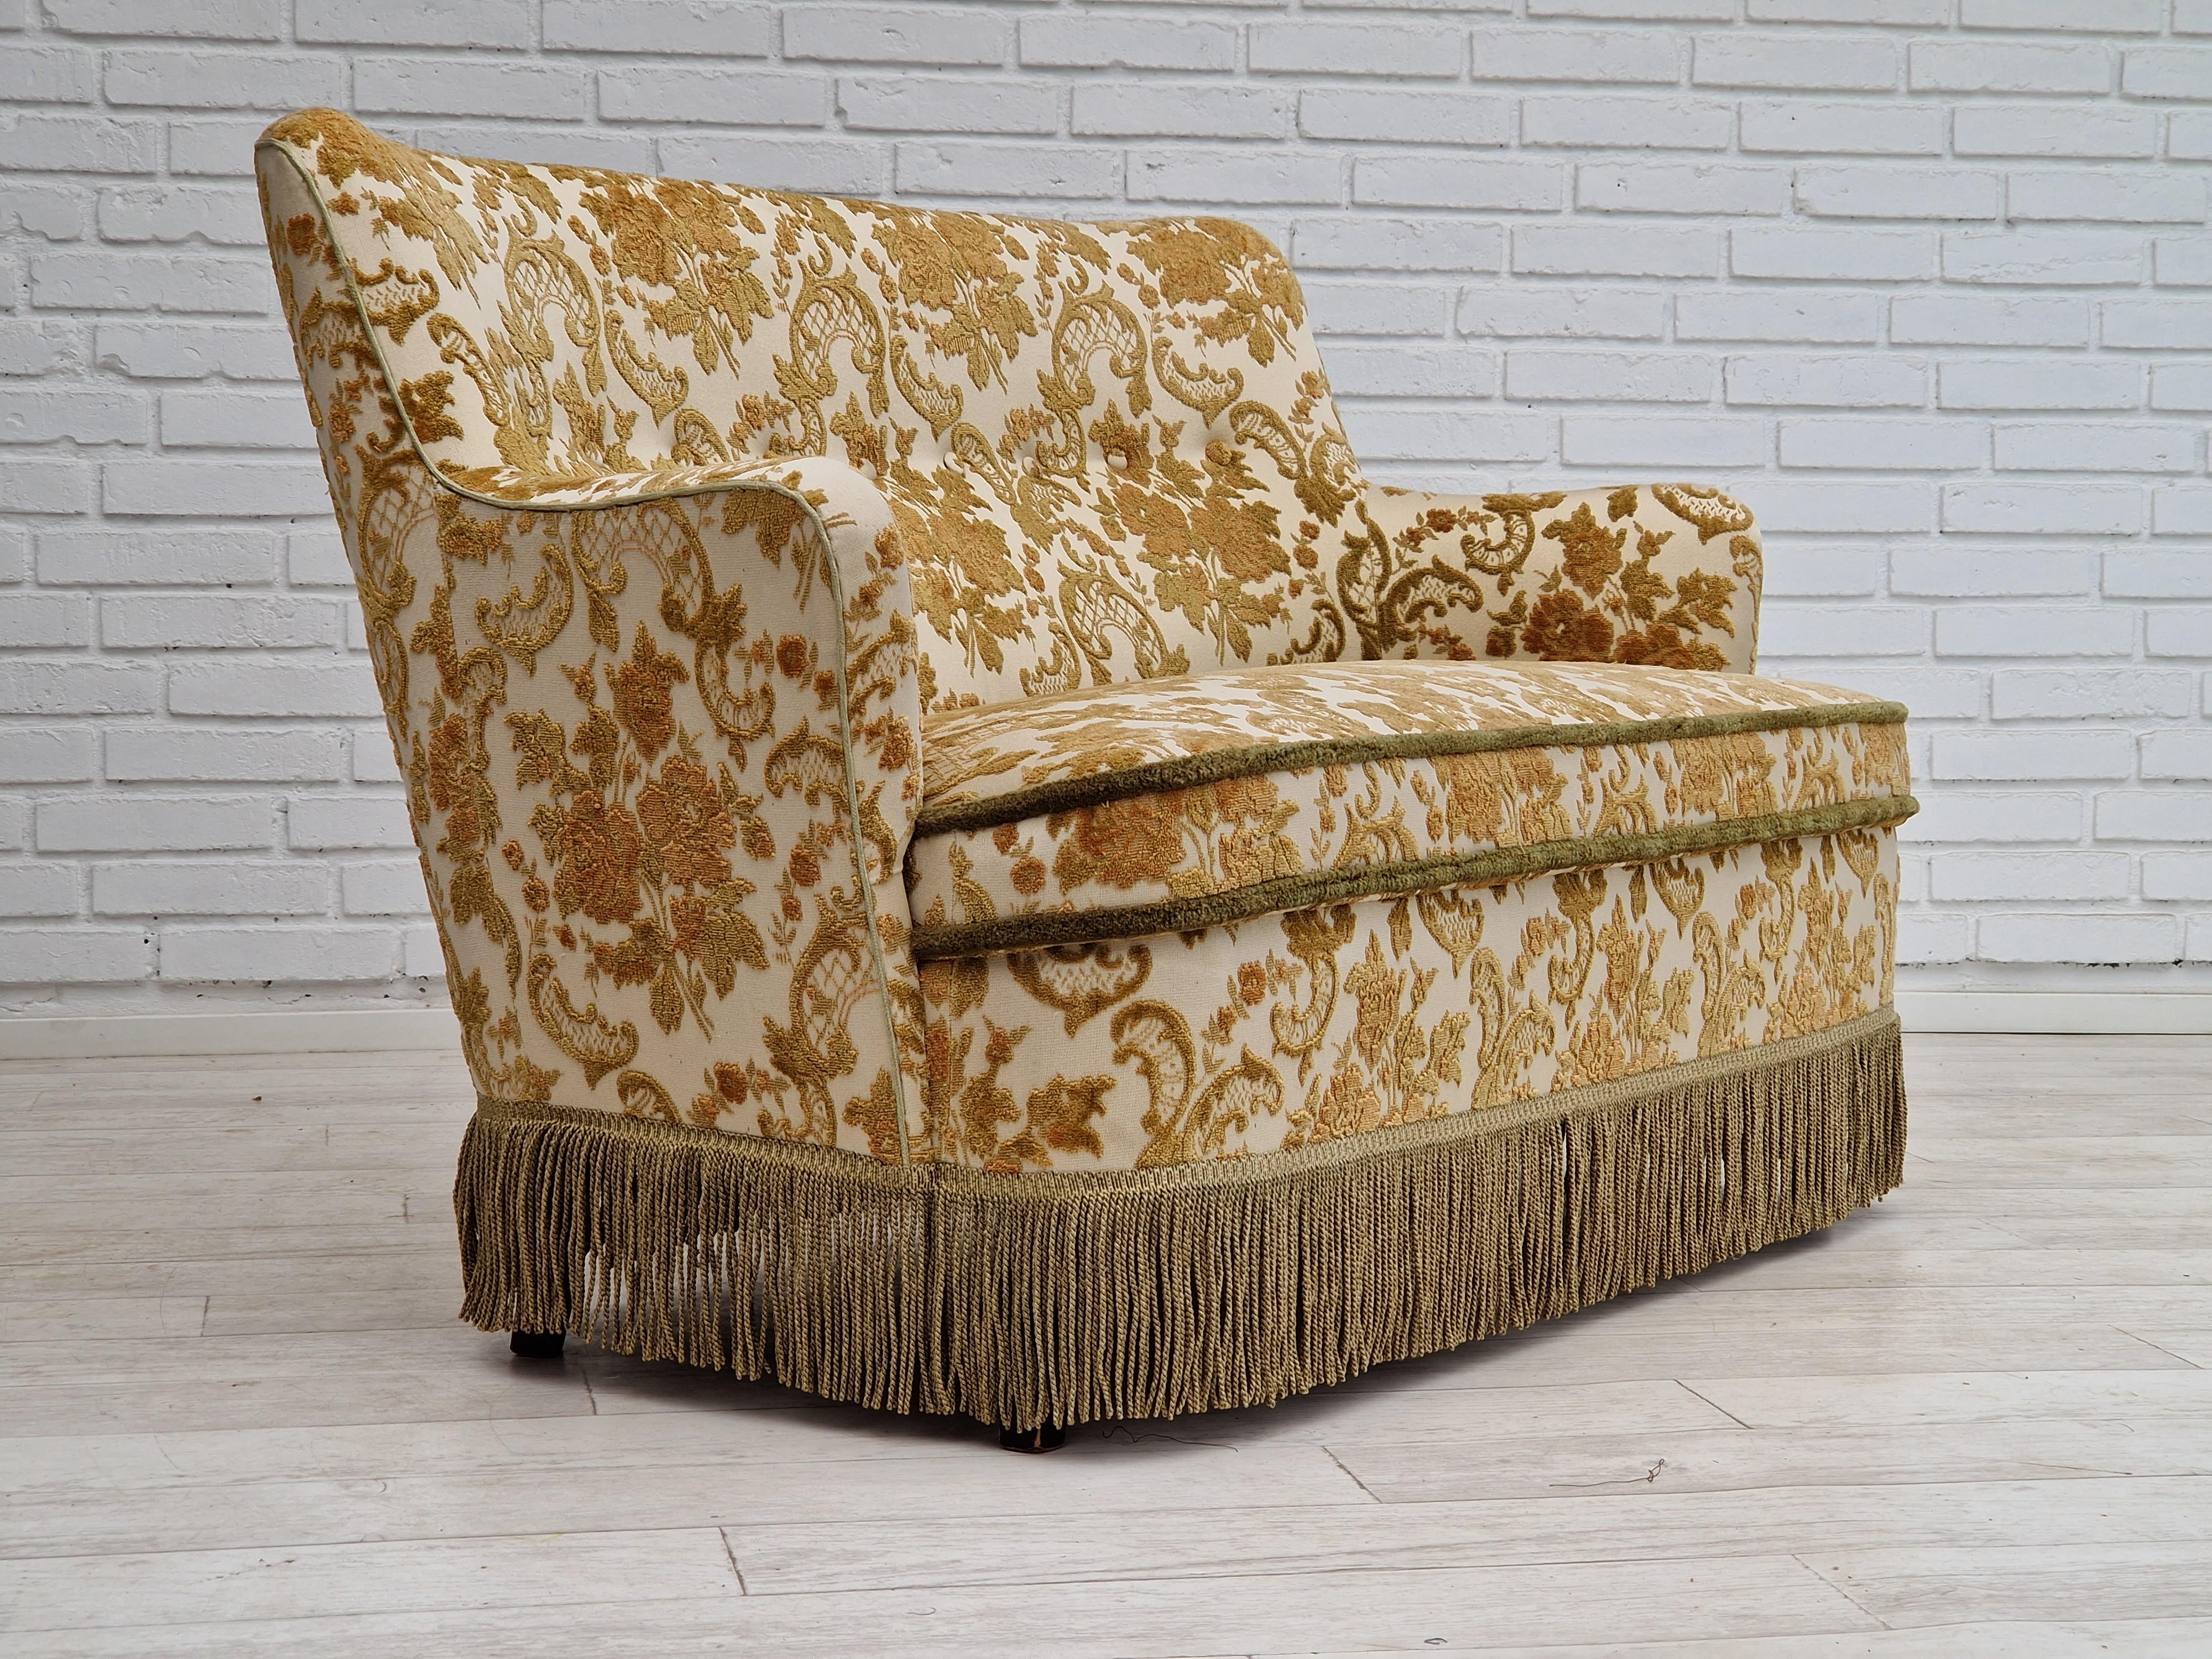 Années 1960, Design/One. Canapé 2 places original en très bon état : pas d'odeurs ni de taches. Tissu d'ameublement d'origine, ressorts dans l'assise. Pieds en bois de hêtre. Fabriqué par un fabricant de meubles danois vers 1960-65.
